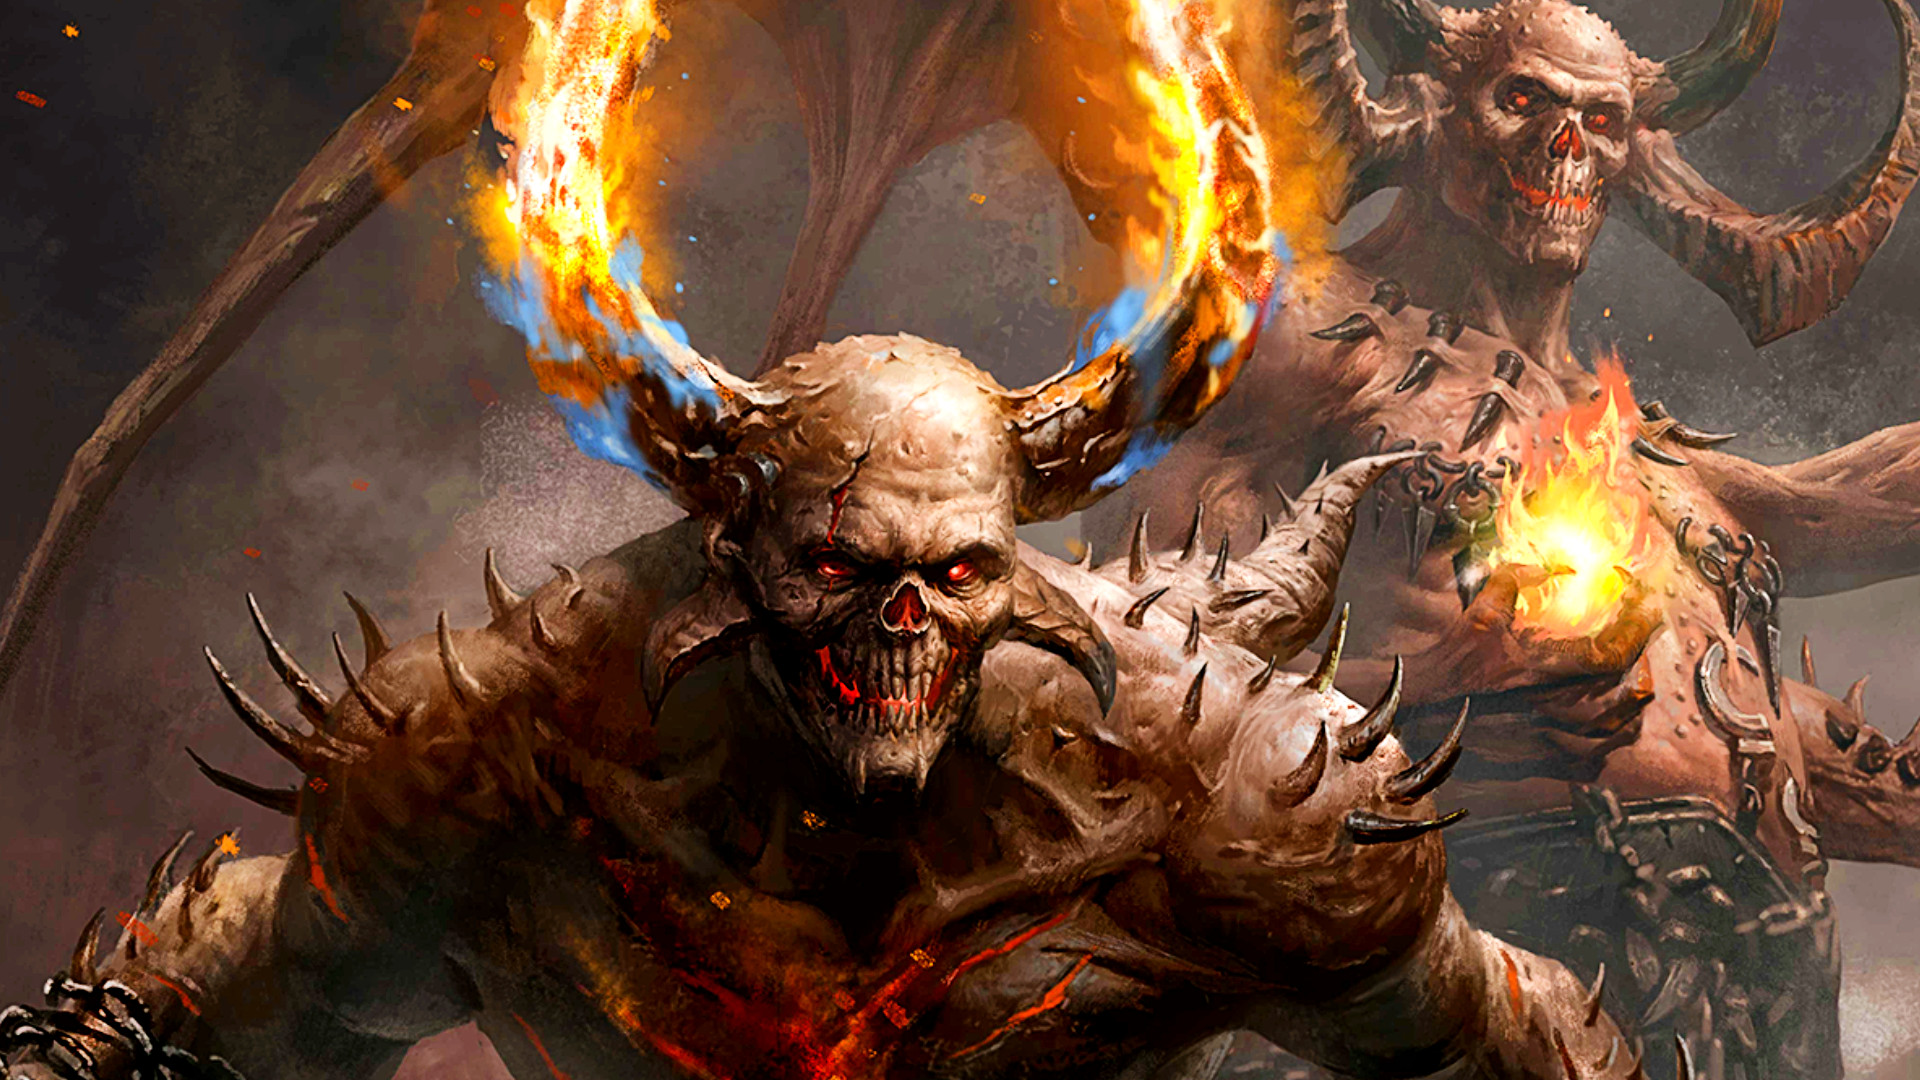 Diablo Immortal Wiki & Guides - zilliongamer